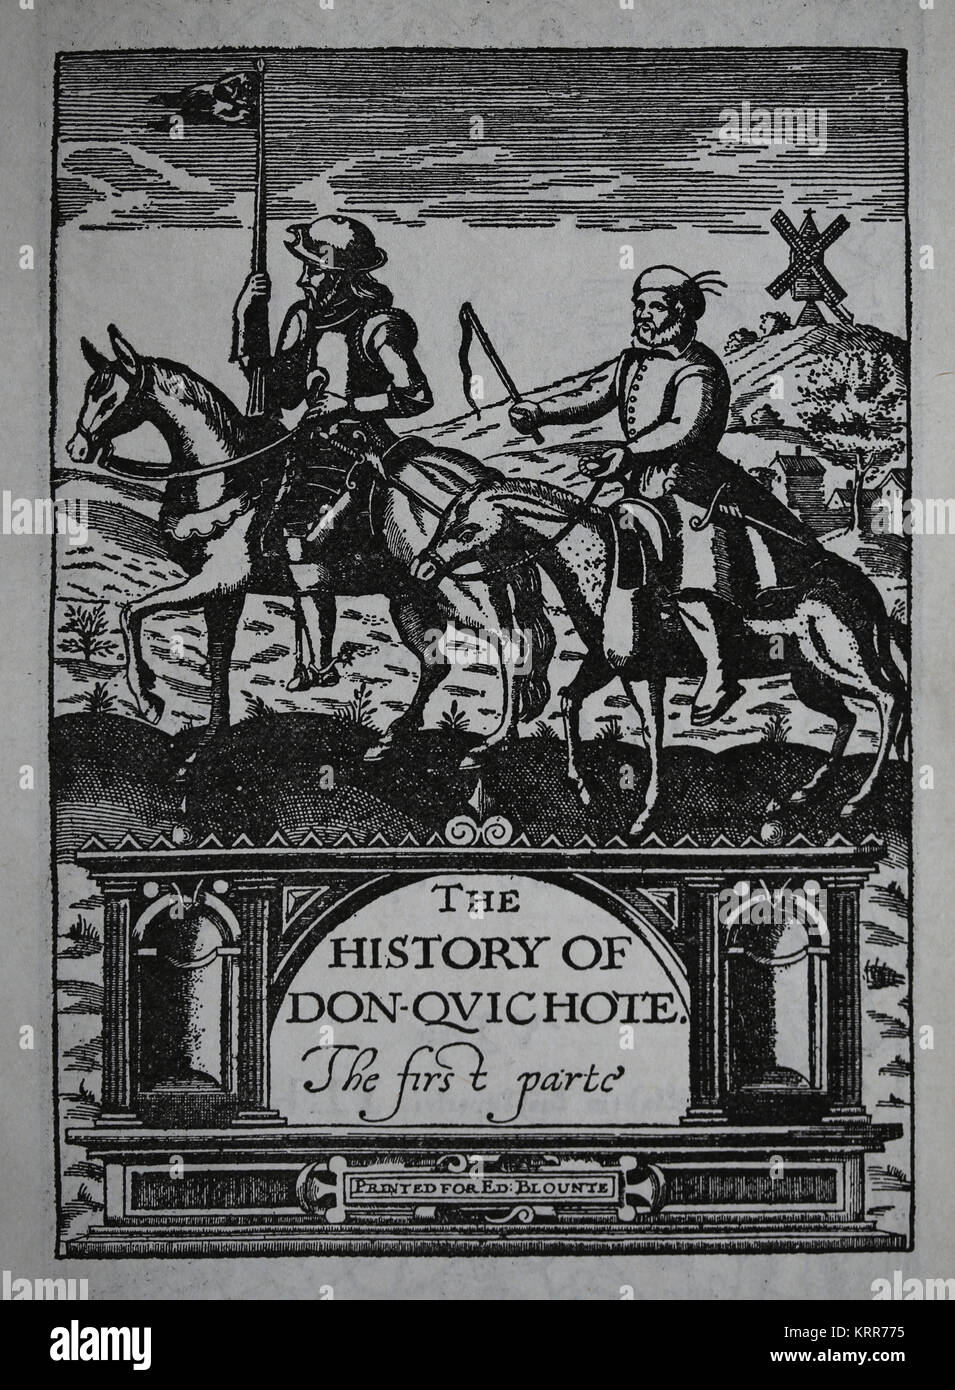 Don Quijote von Miguel de Cervantes. Edition von Thomas Shelton. 1. Teil. Deutsche Ausgabe, 1612. Stockfoto